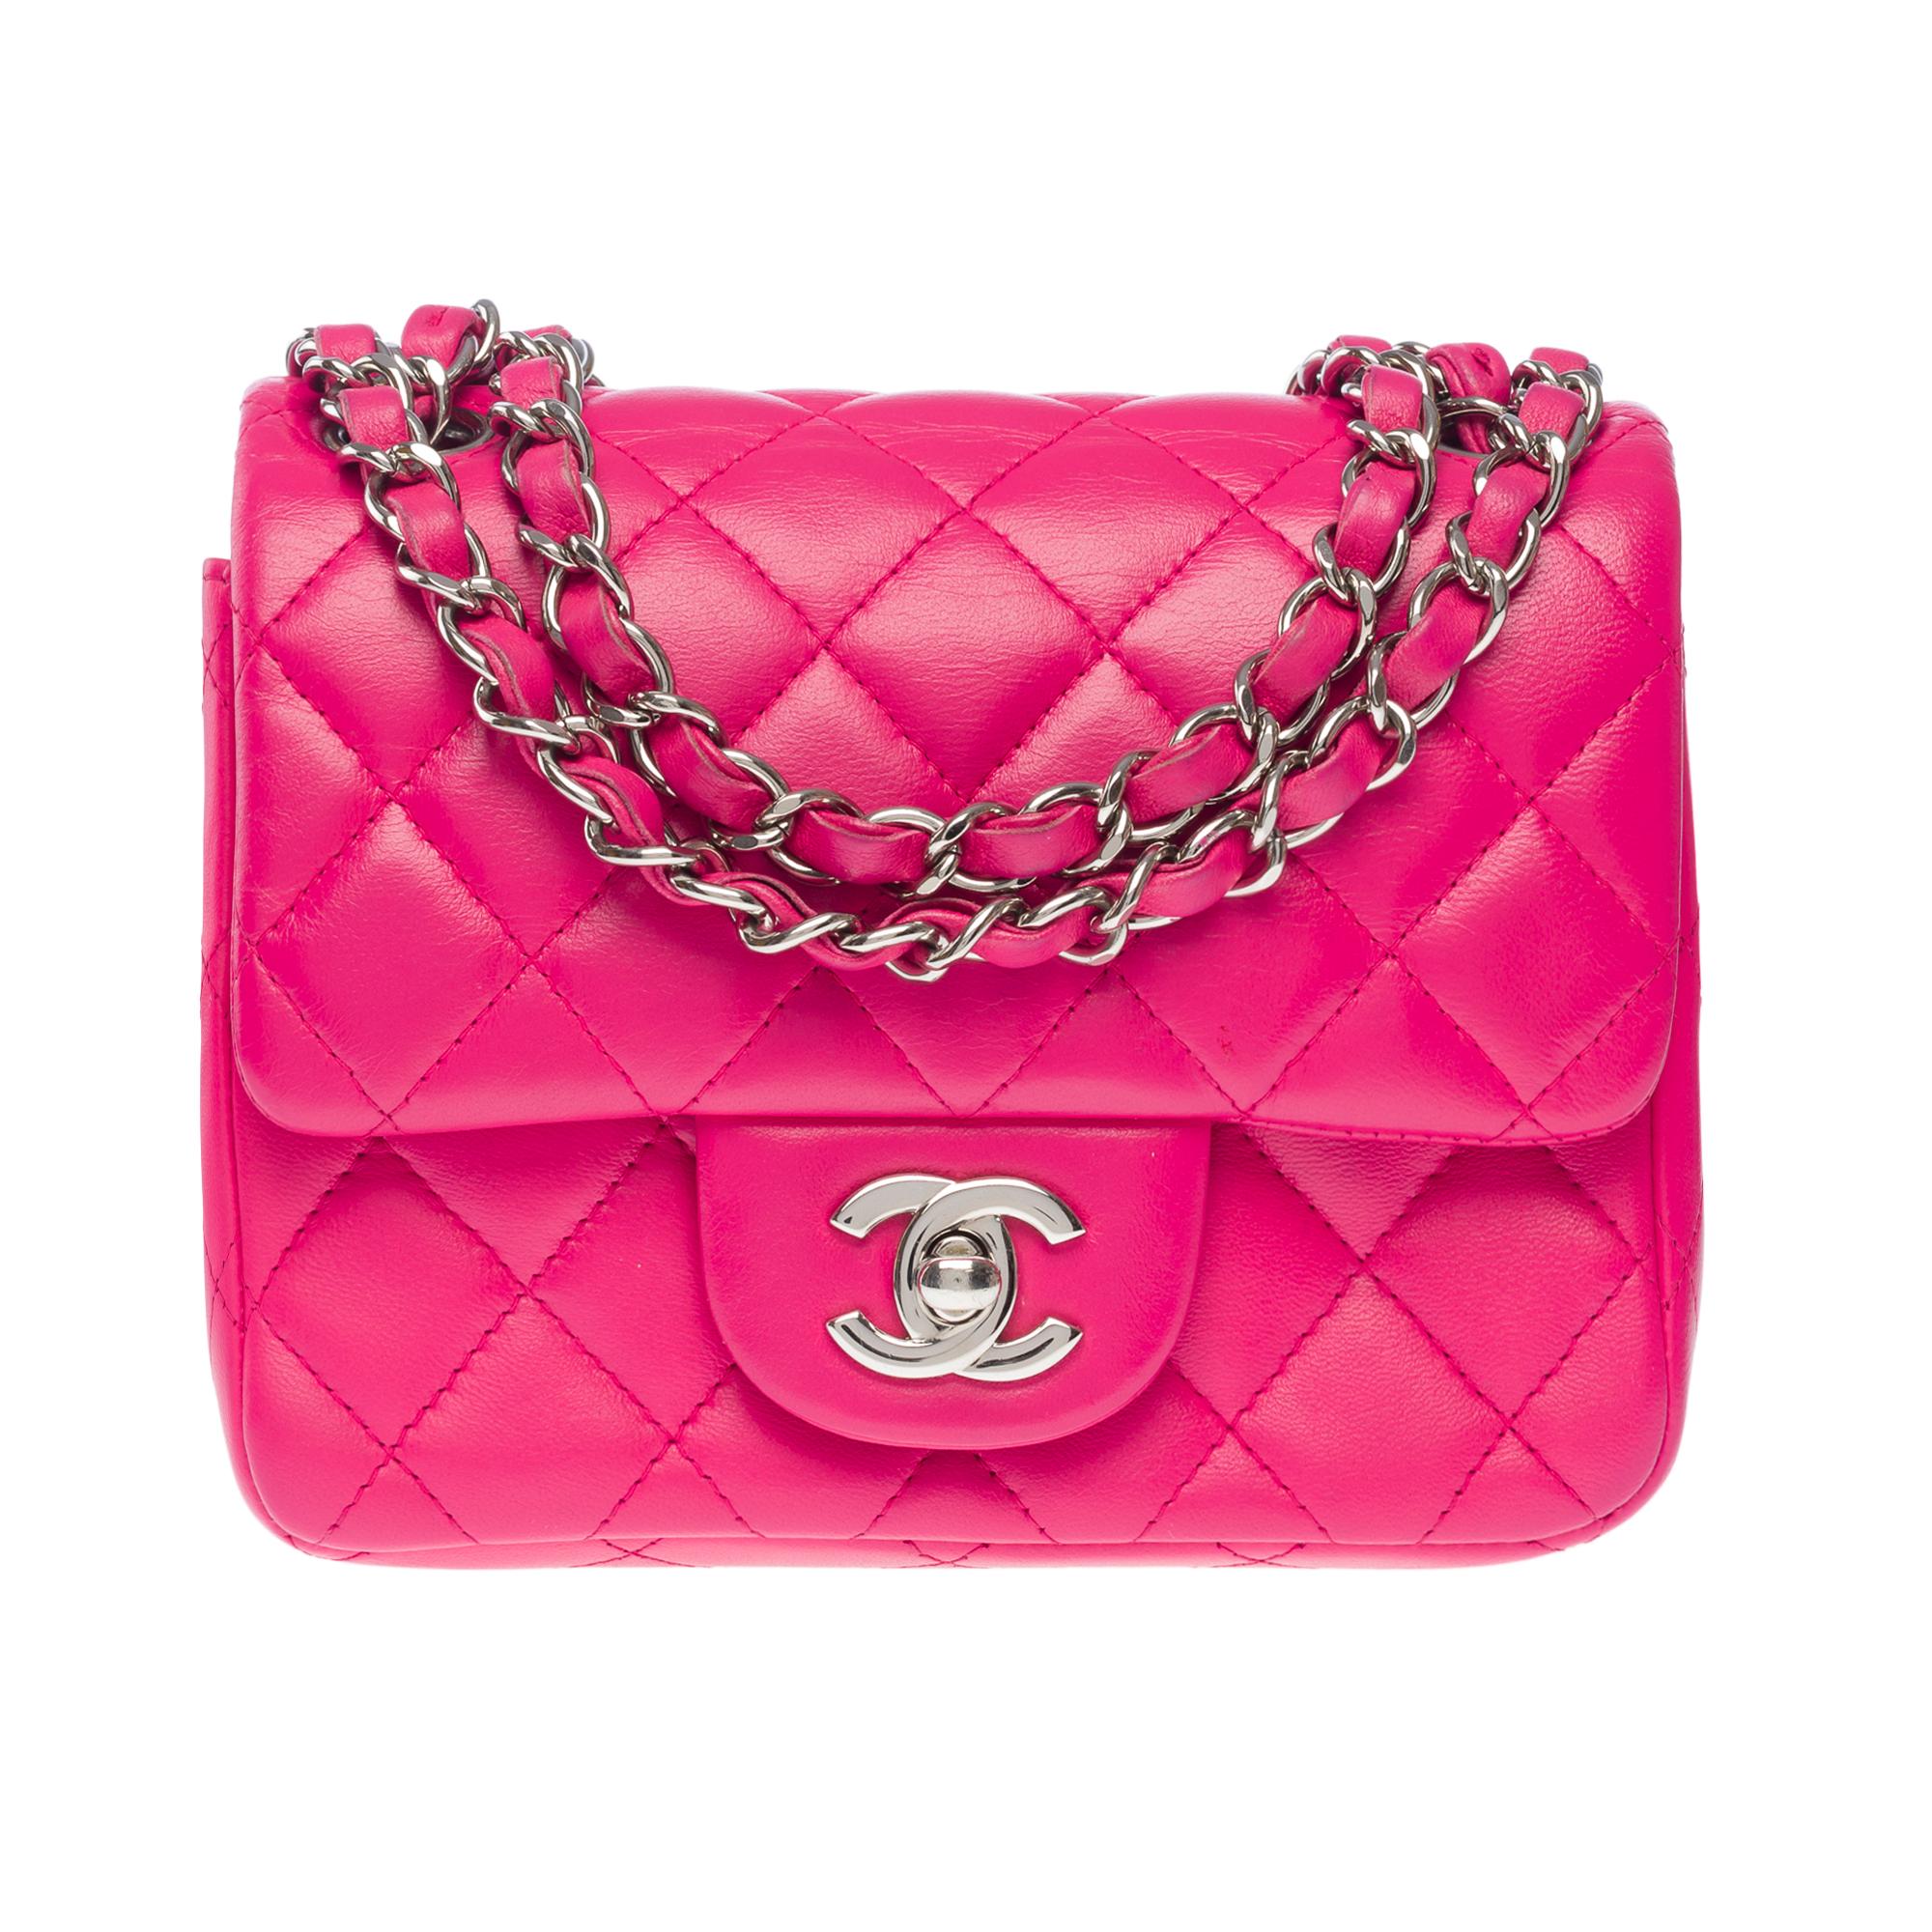 Exceptionnel Mini sac à rabat Timeless de Chanel en cuir matelassé rose, anse en chaîne en métal argenté entrelacée de cuir rose pour un portage à l'épaule ou en bandoulière.

Fermeture par rabat en métal argenté
Une poche plaquée au dos du